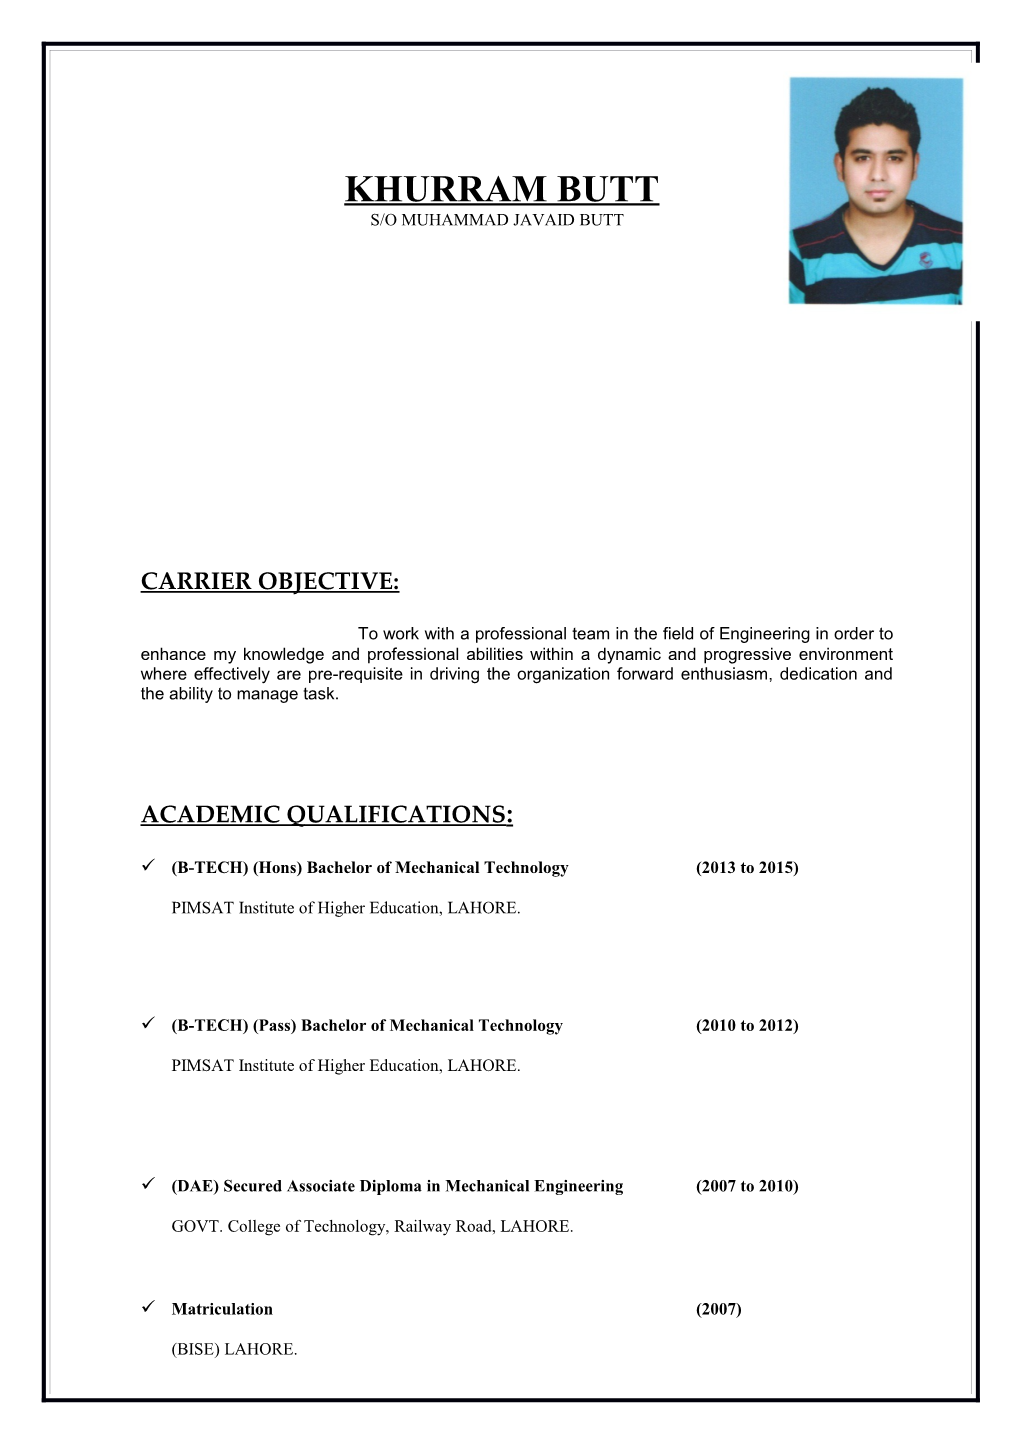 CV of Khurram Butt